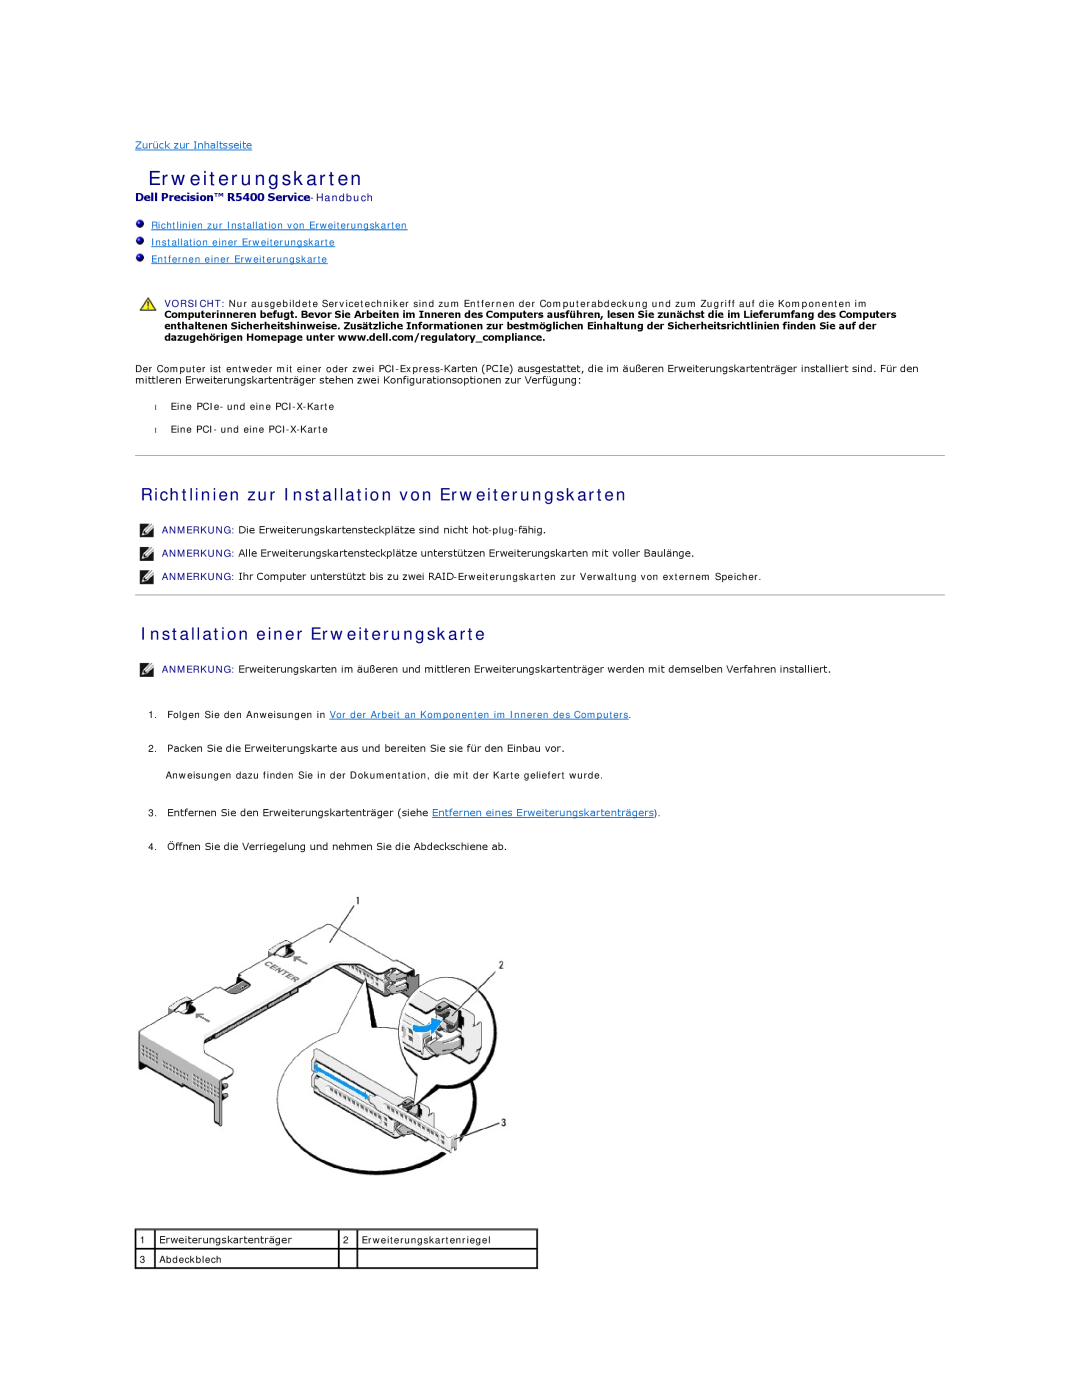 Dell 5400 manual Richtlinien zur Installation von Erweiterungskarten, Installation einer Erweiterungskarte 